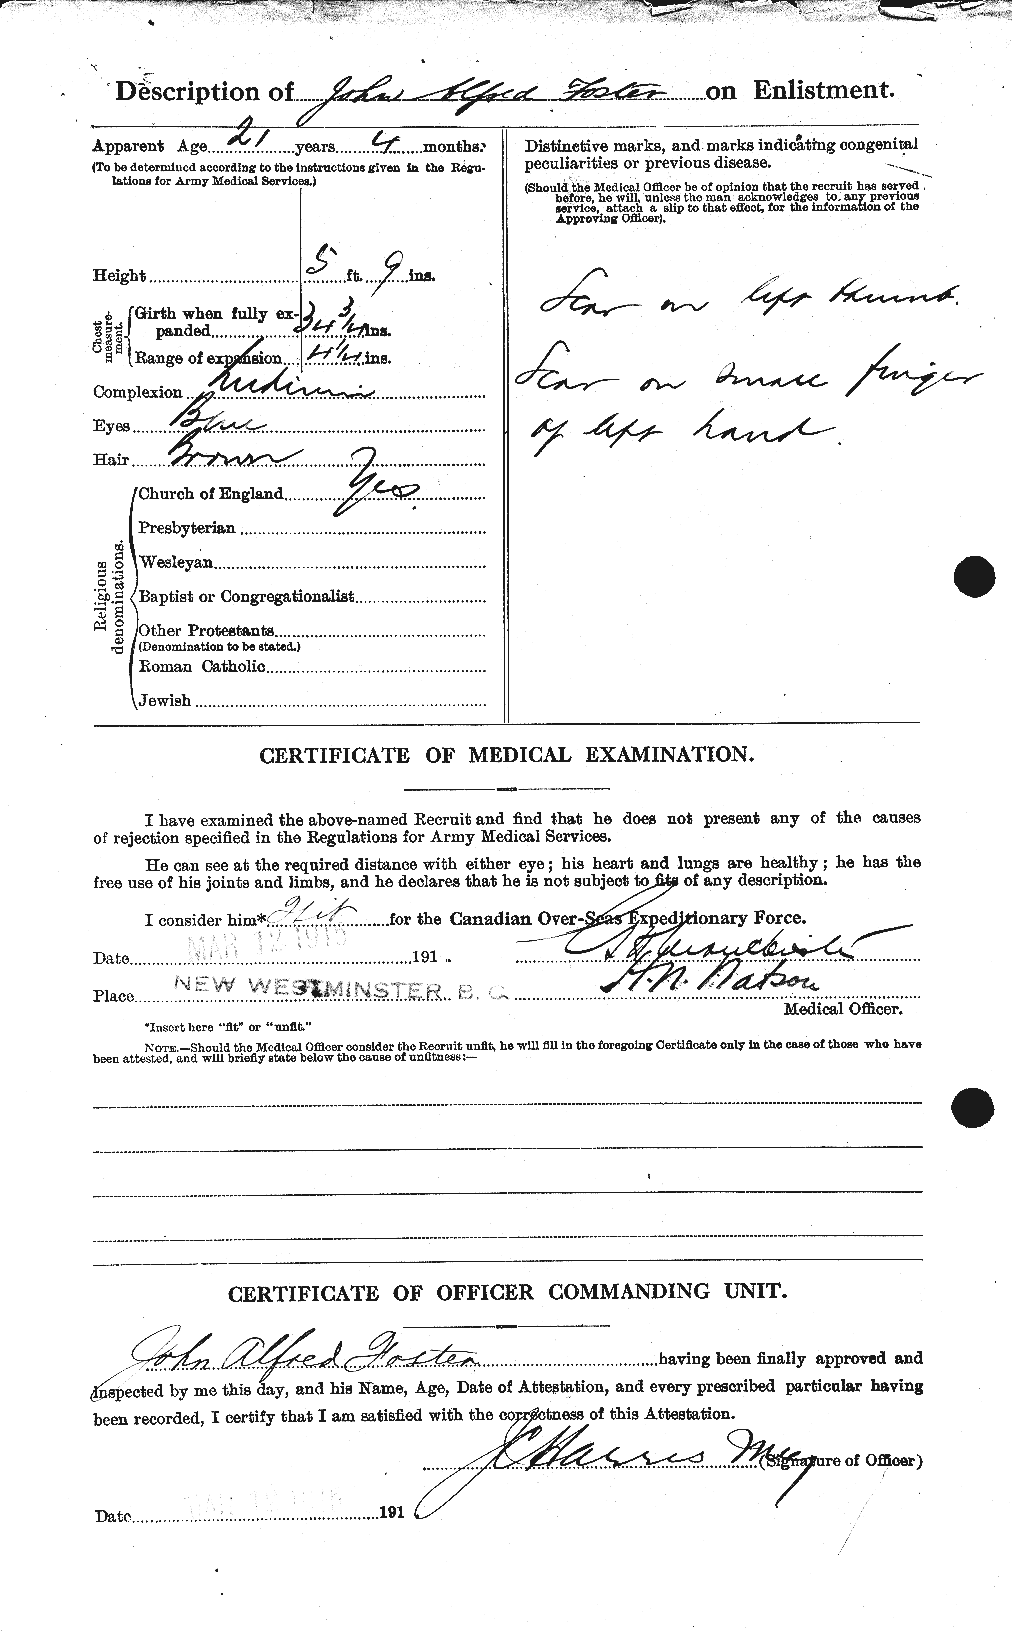 Dossiers du Personnel de la Première Guerre mondiale - CEC 333353b